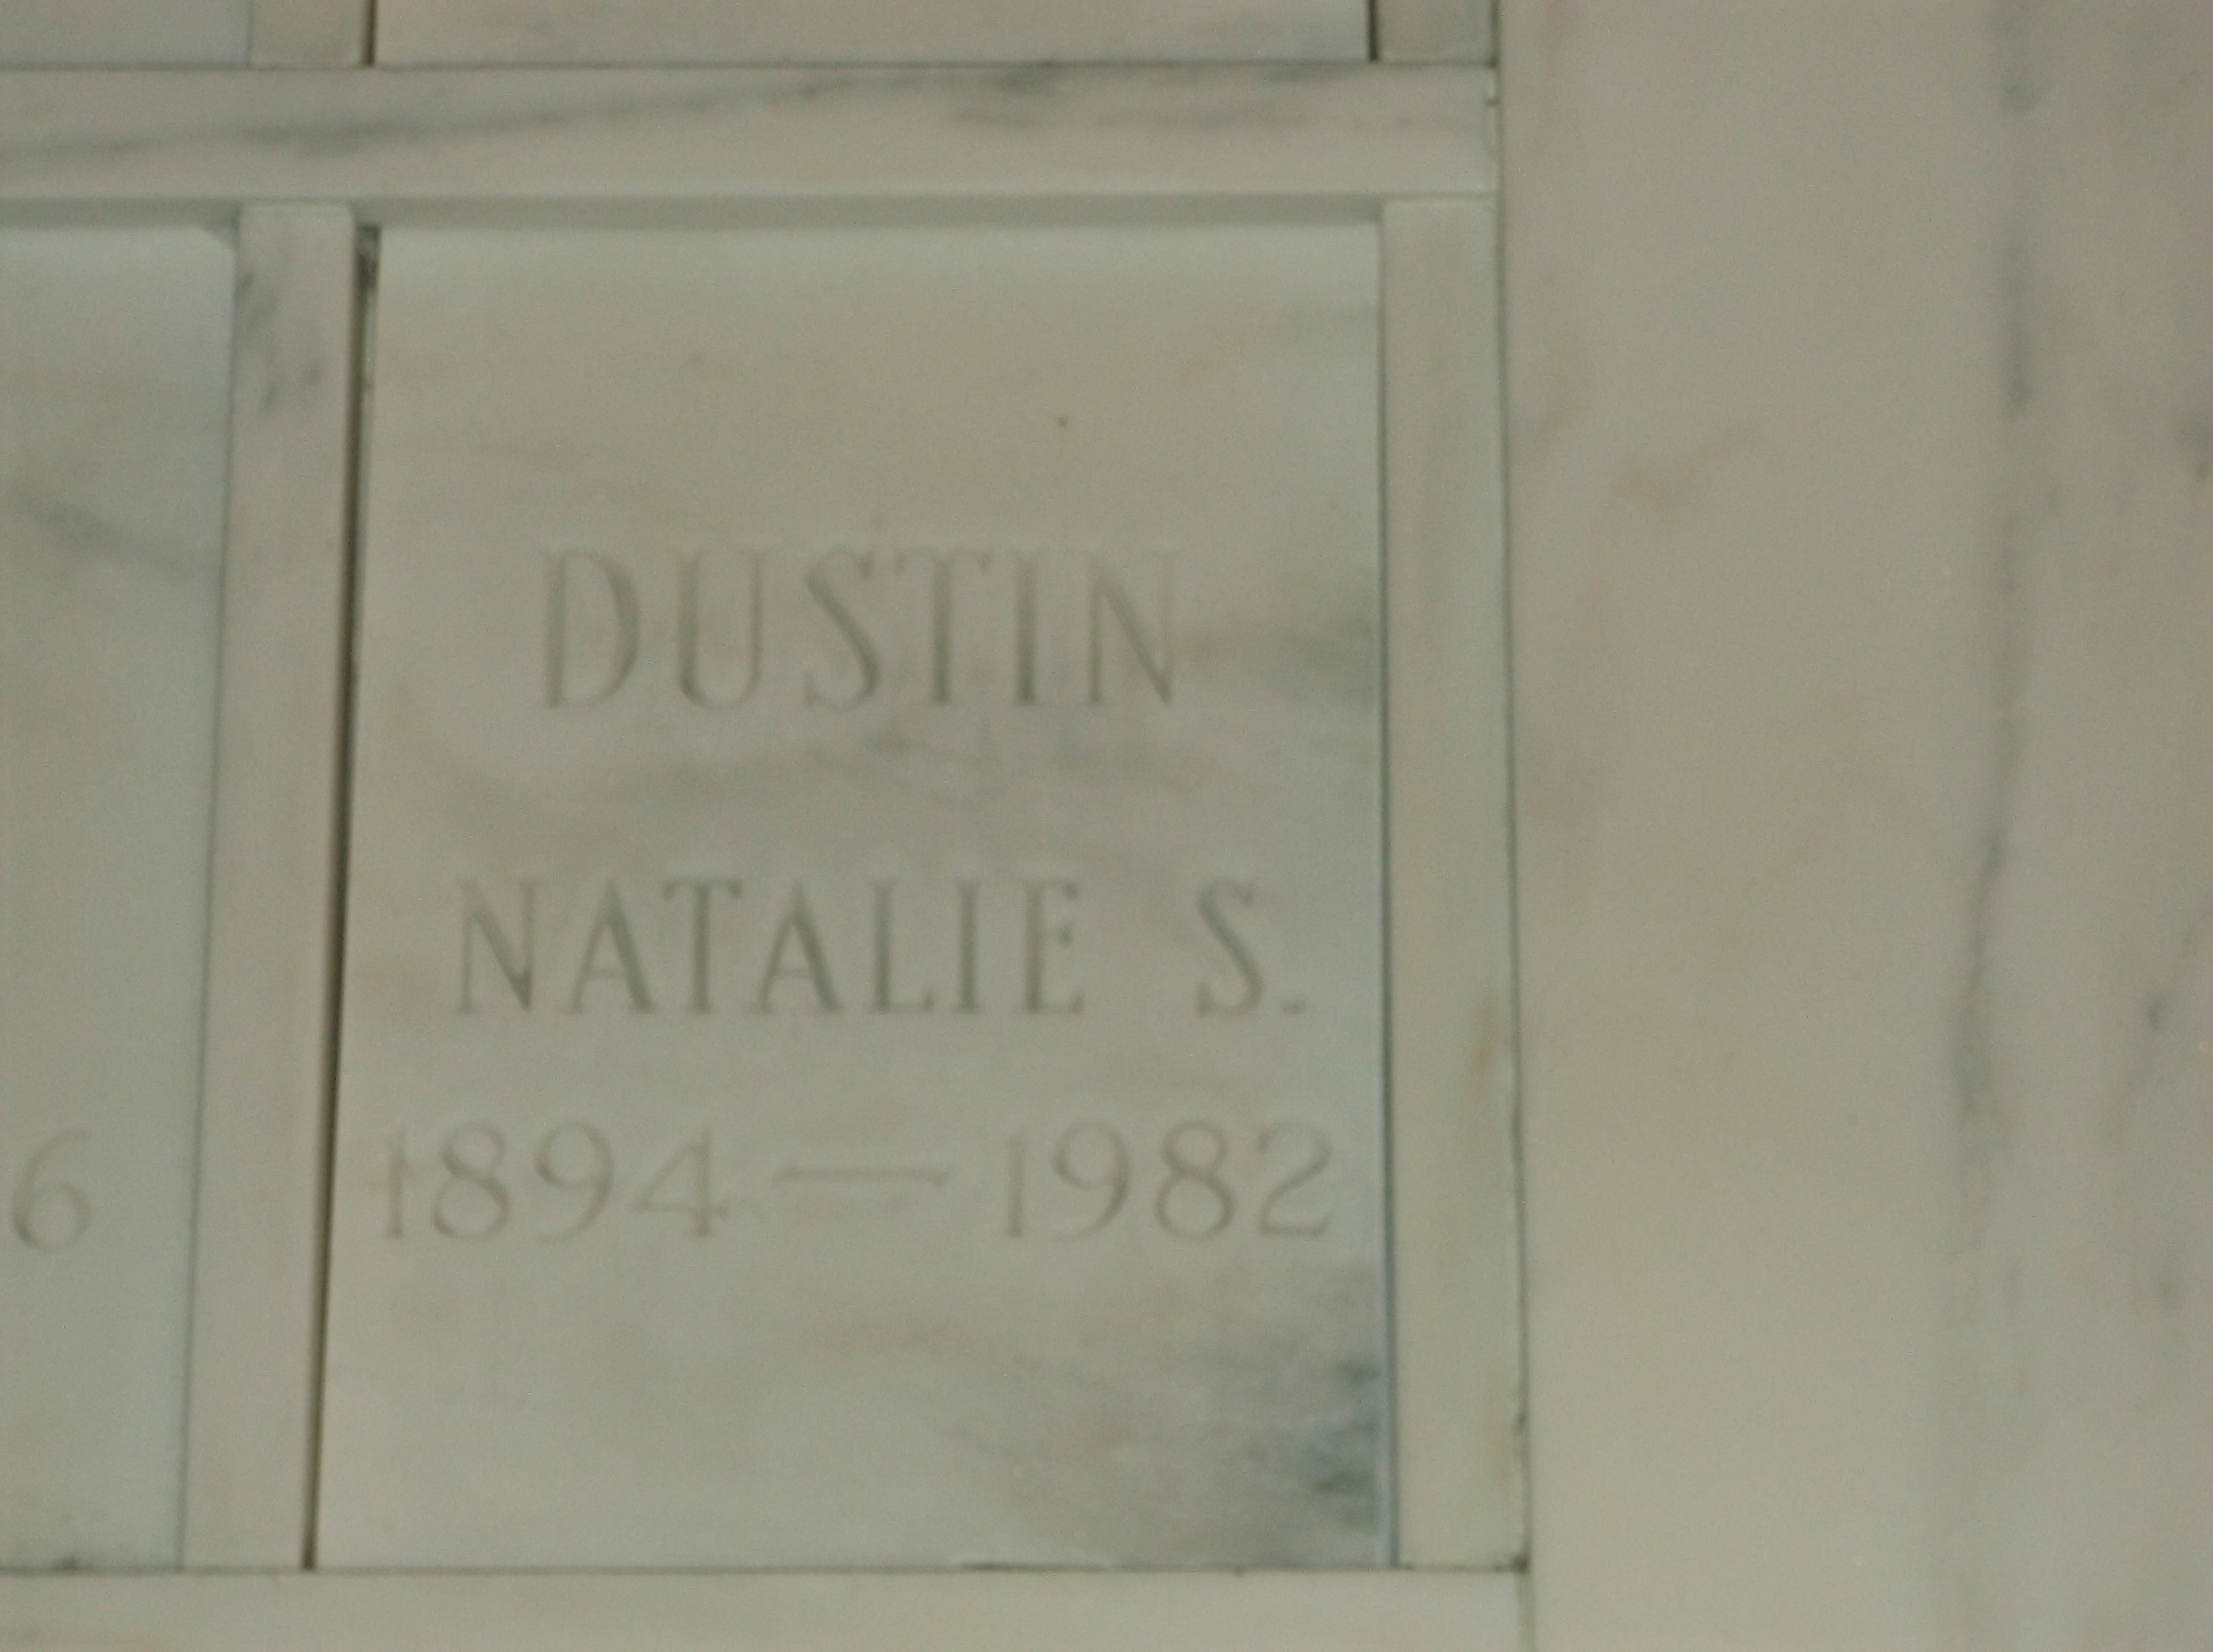 Natalie S Dustin